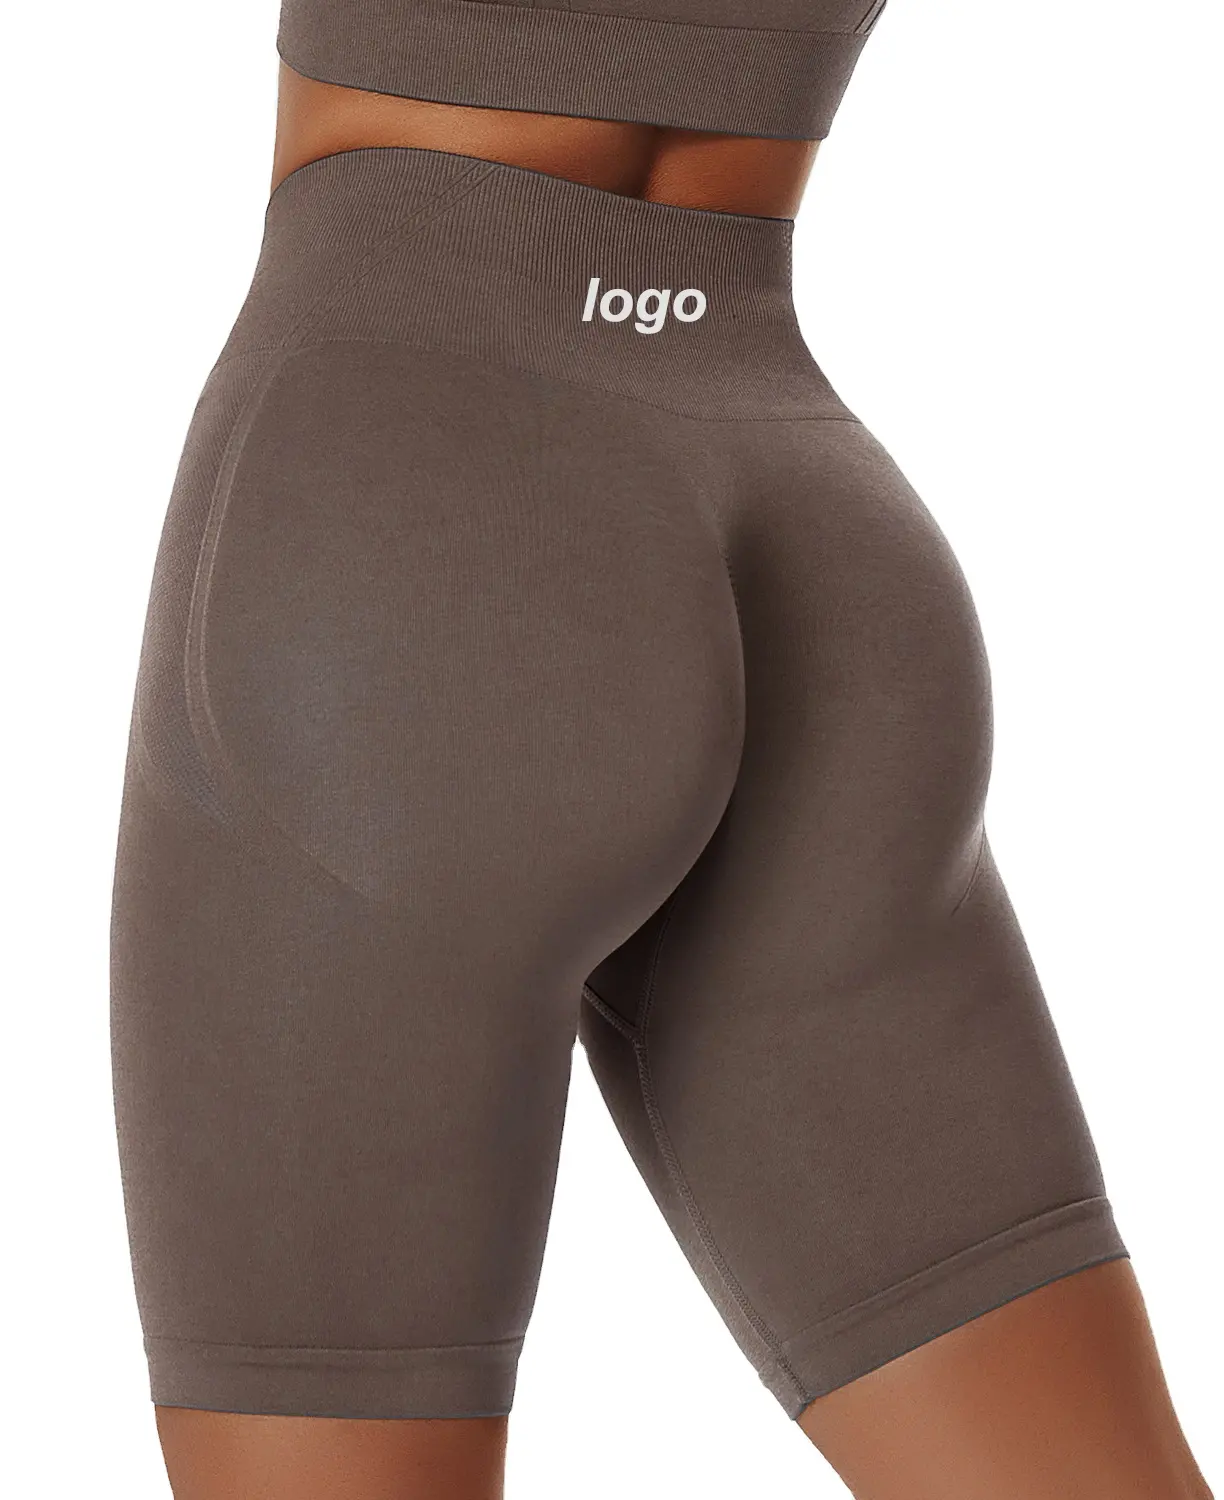 Hochwertige Frauen Quick Dry Soft Thick Nicht durchsichtige Fahrrads horts Nahtlose Scrunch Back Yoga Shorts